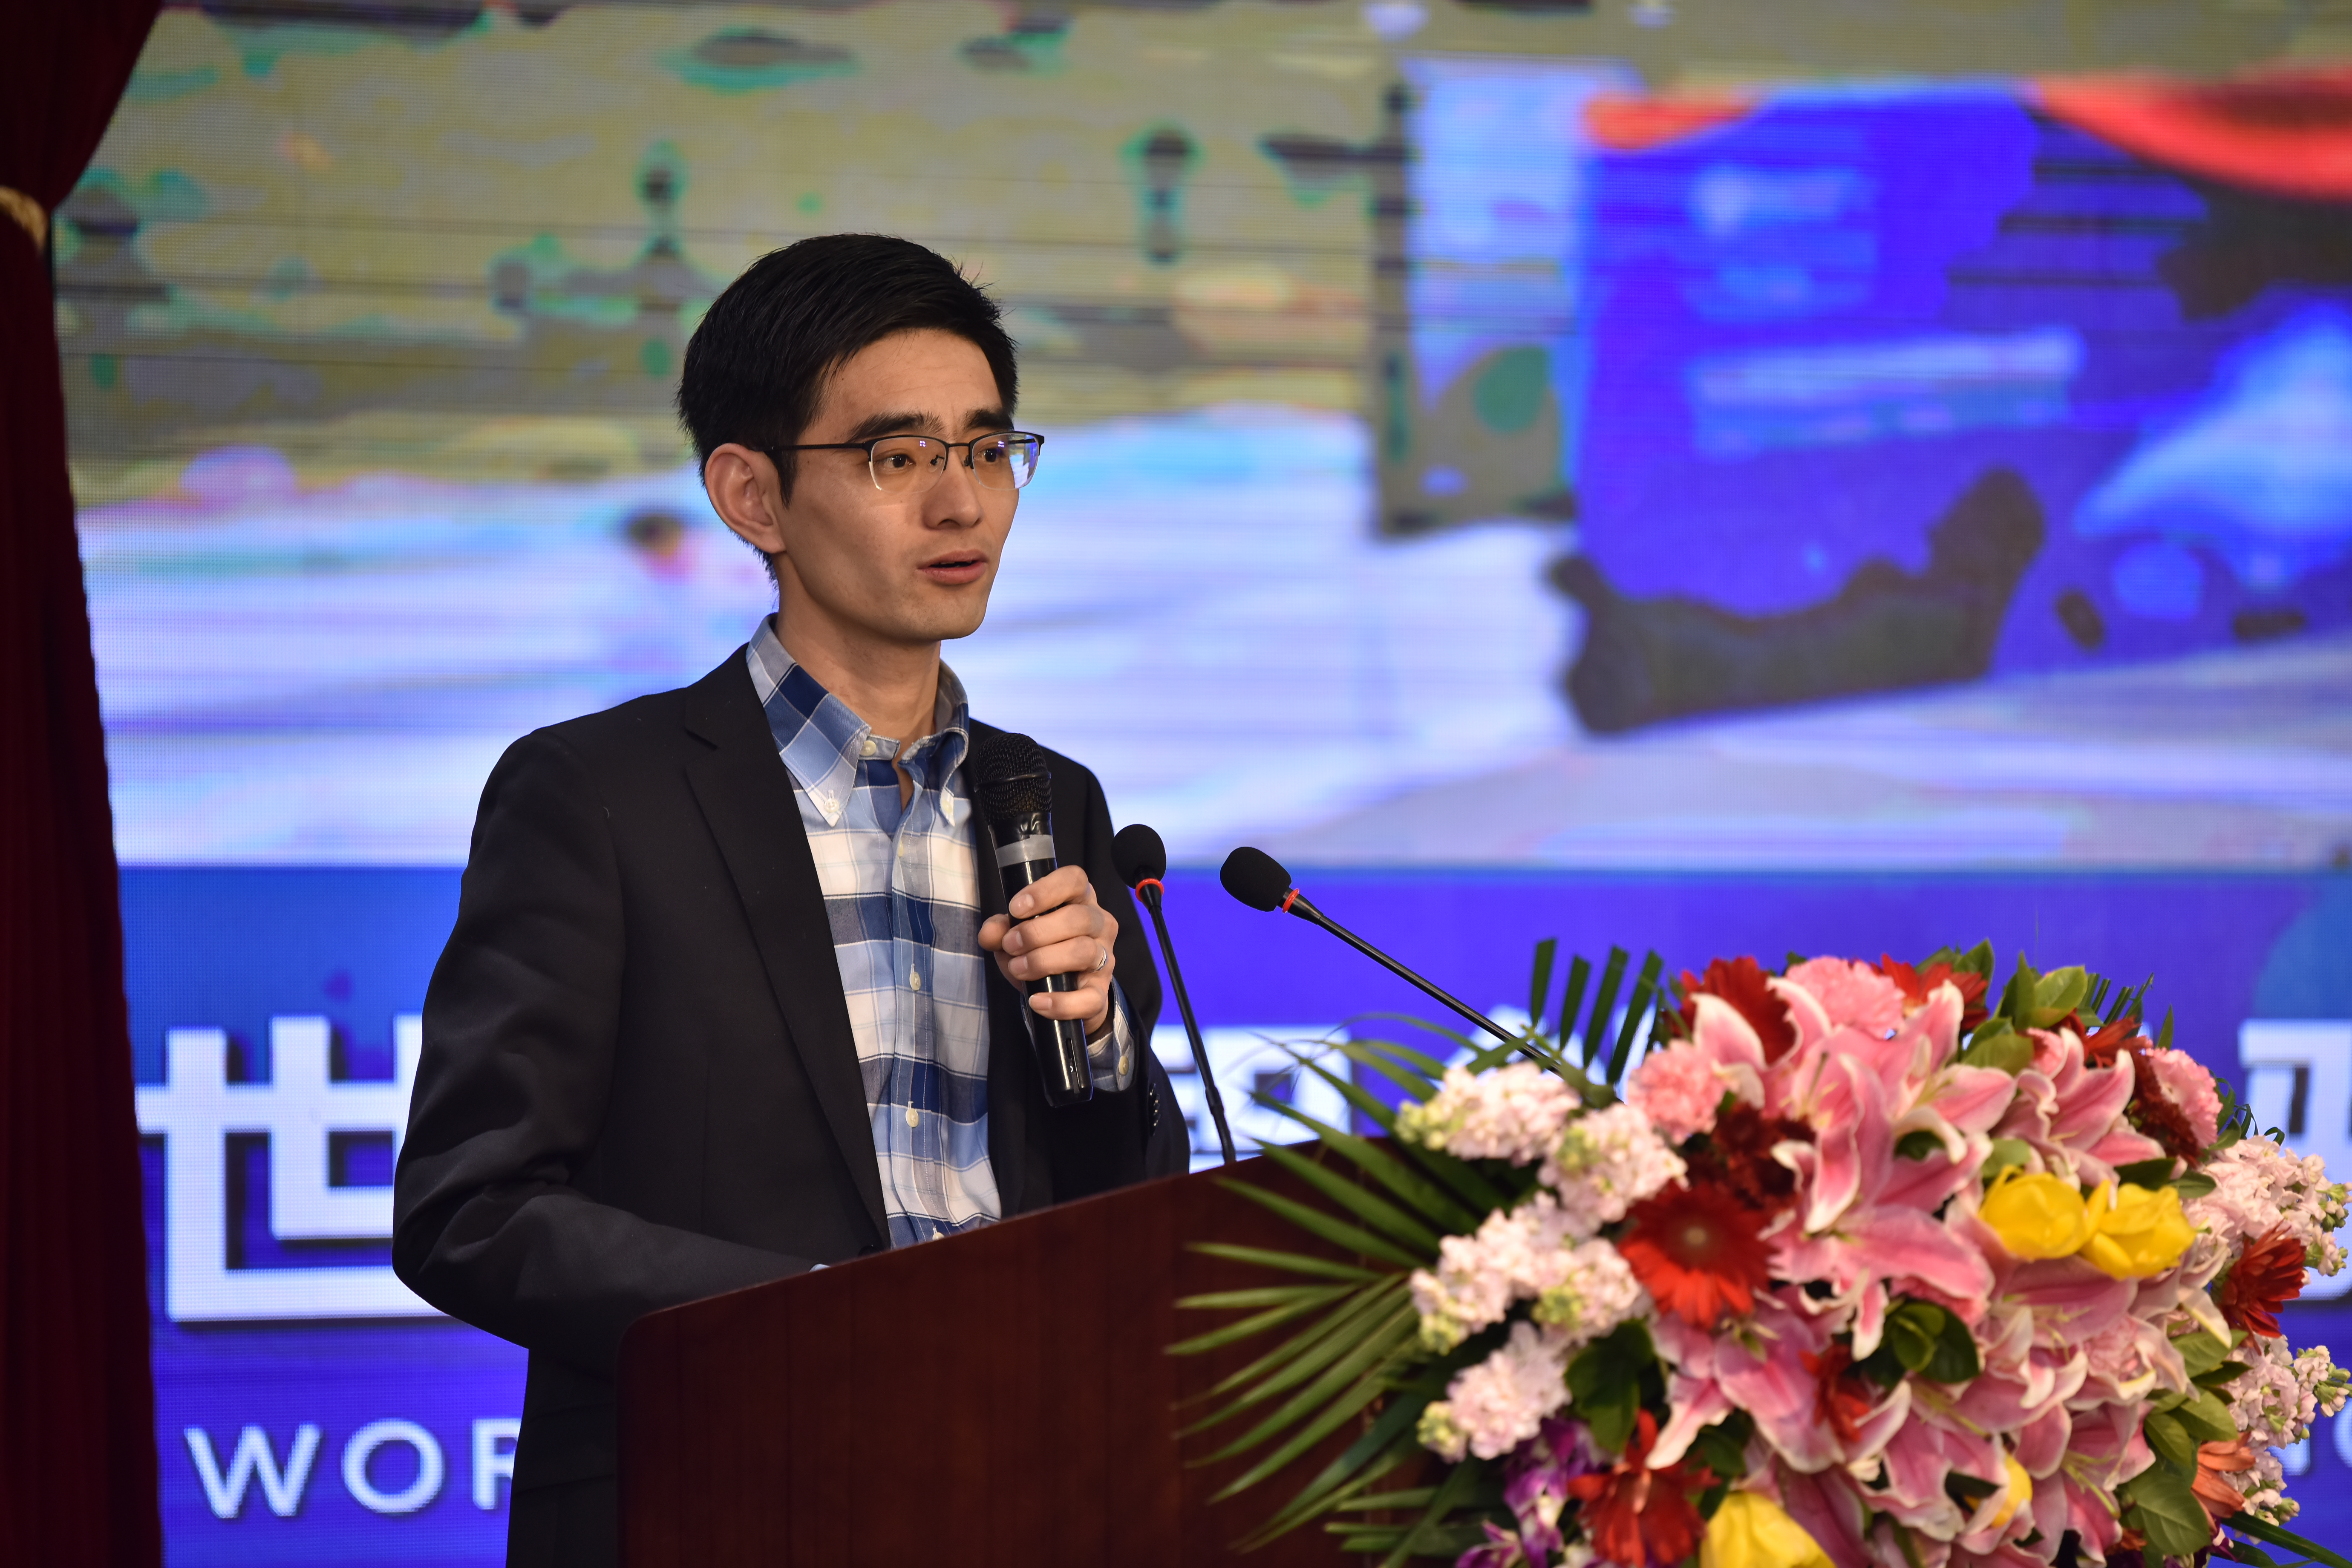 聚焦智能科技赋能 第四届世界智能大会北京路演成功举办